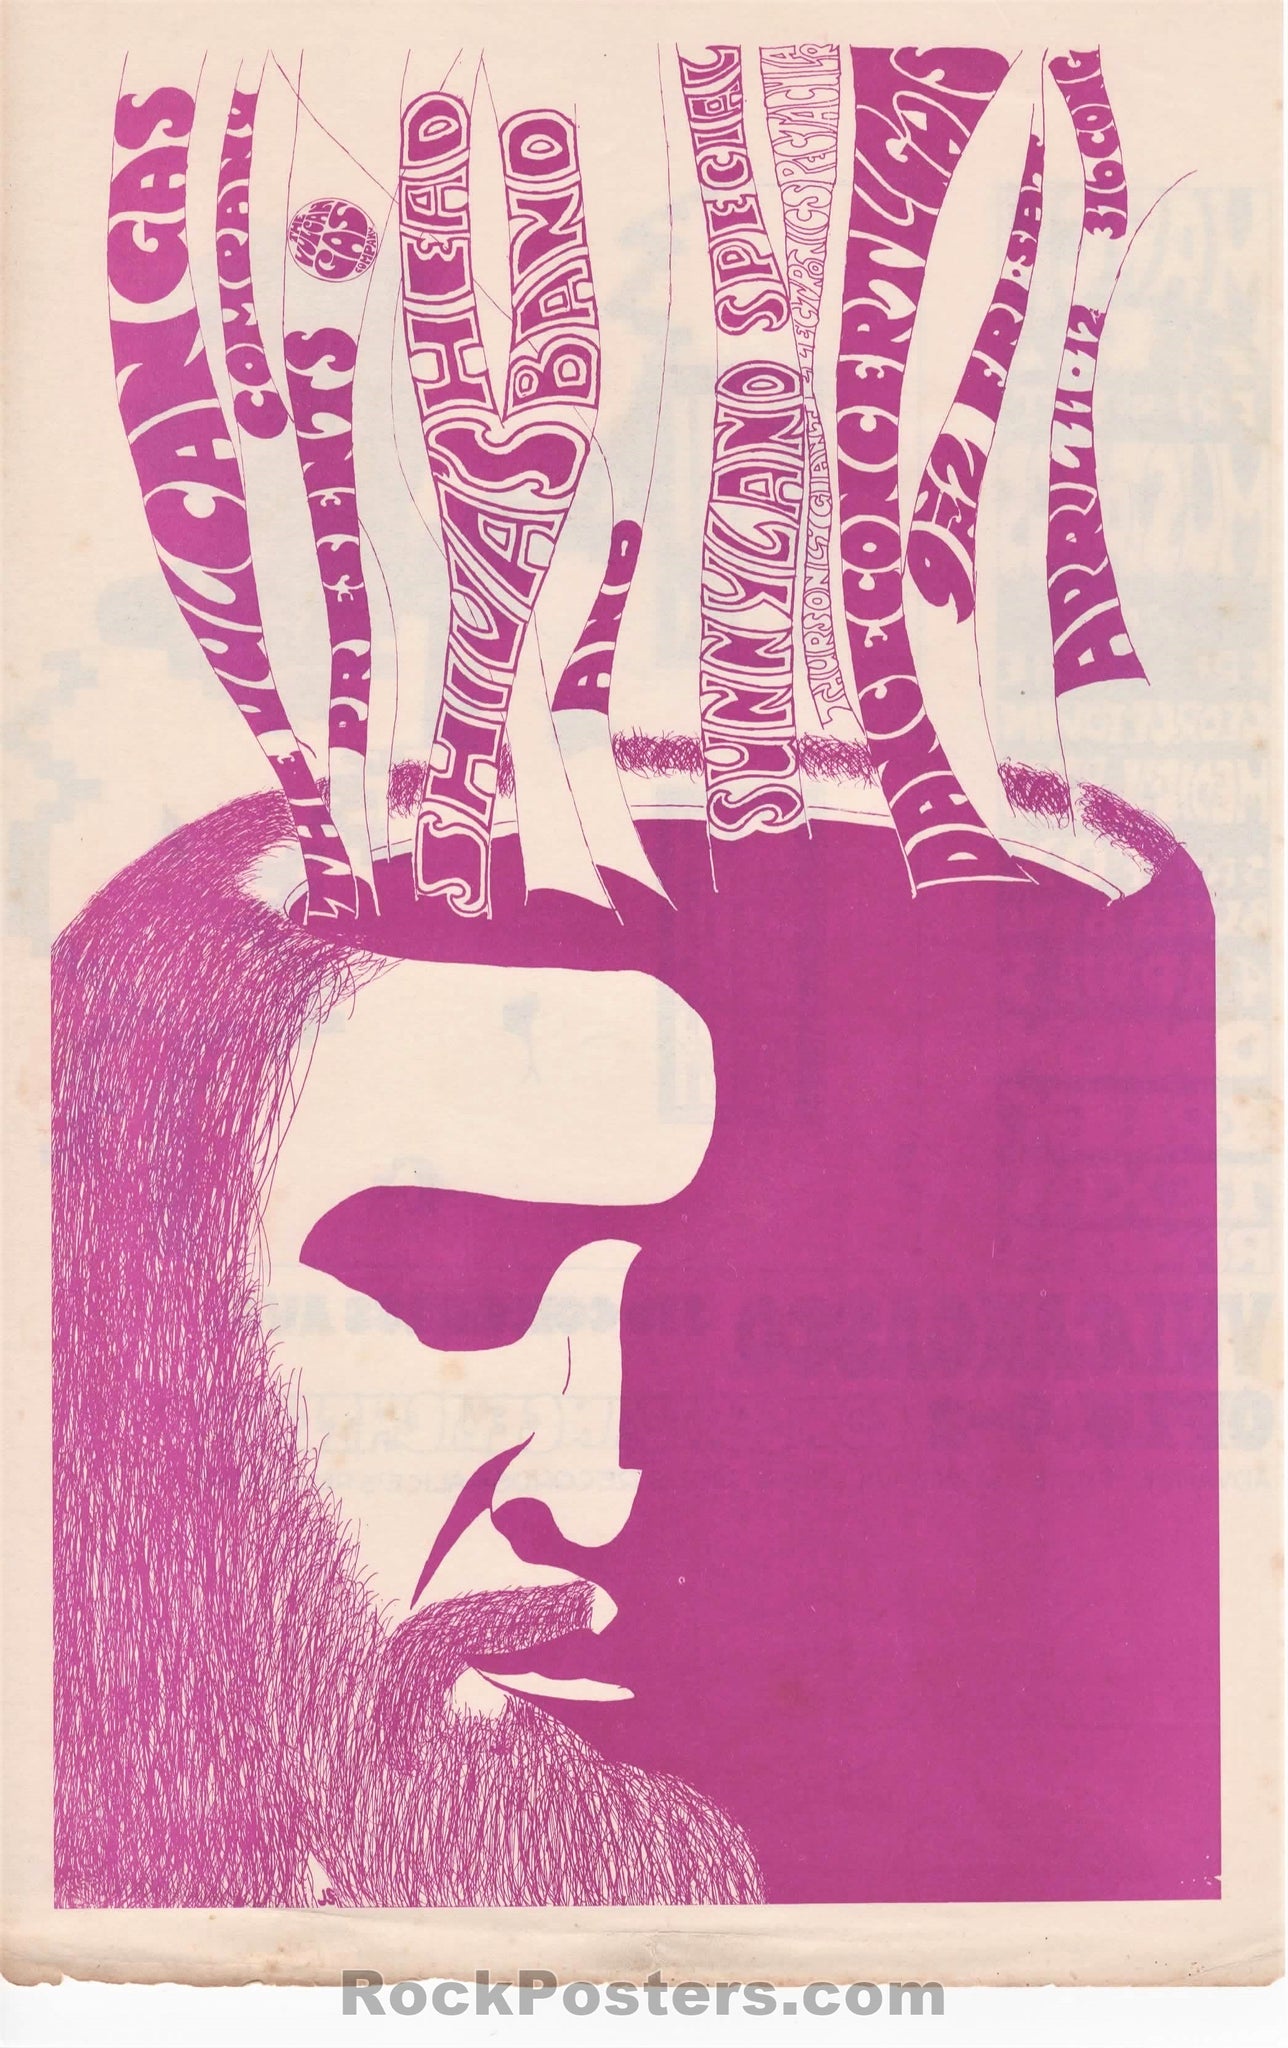 AUCTION - Vulcan Gas - Shiva's Headband - John Shelton 2-Sided - 1969 Handbill - Excellent